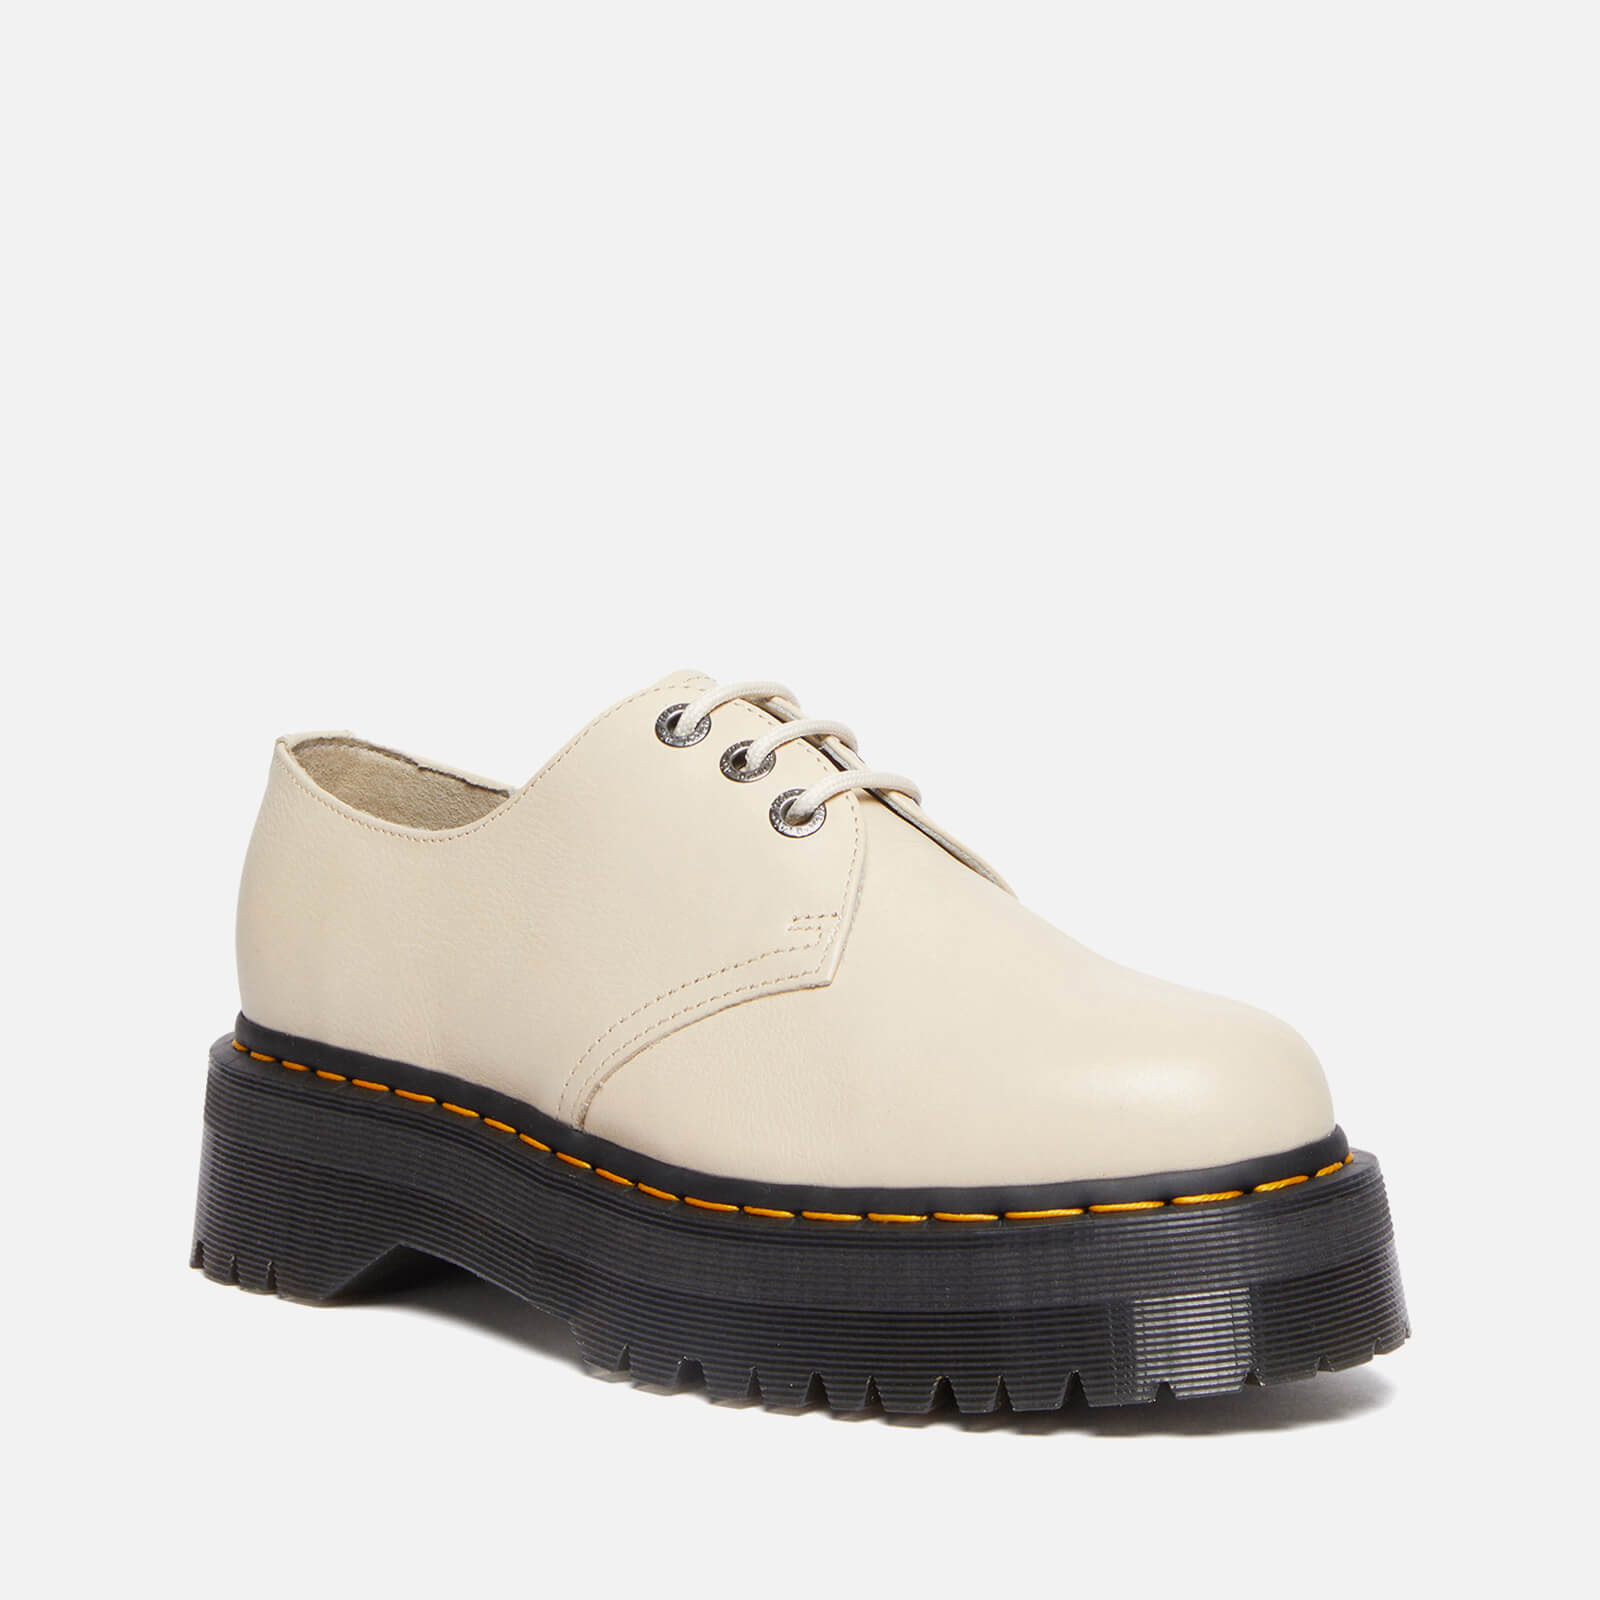 Dr. Martens Women’s 1461 Quad Ii Leather Shoes